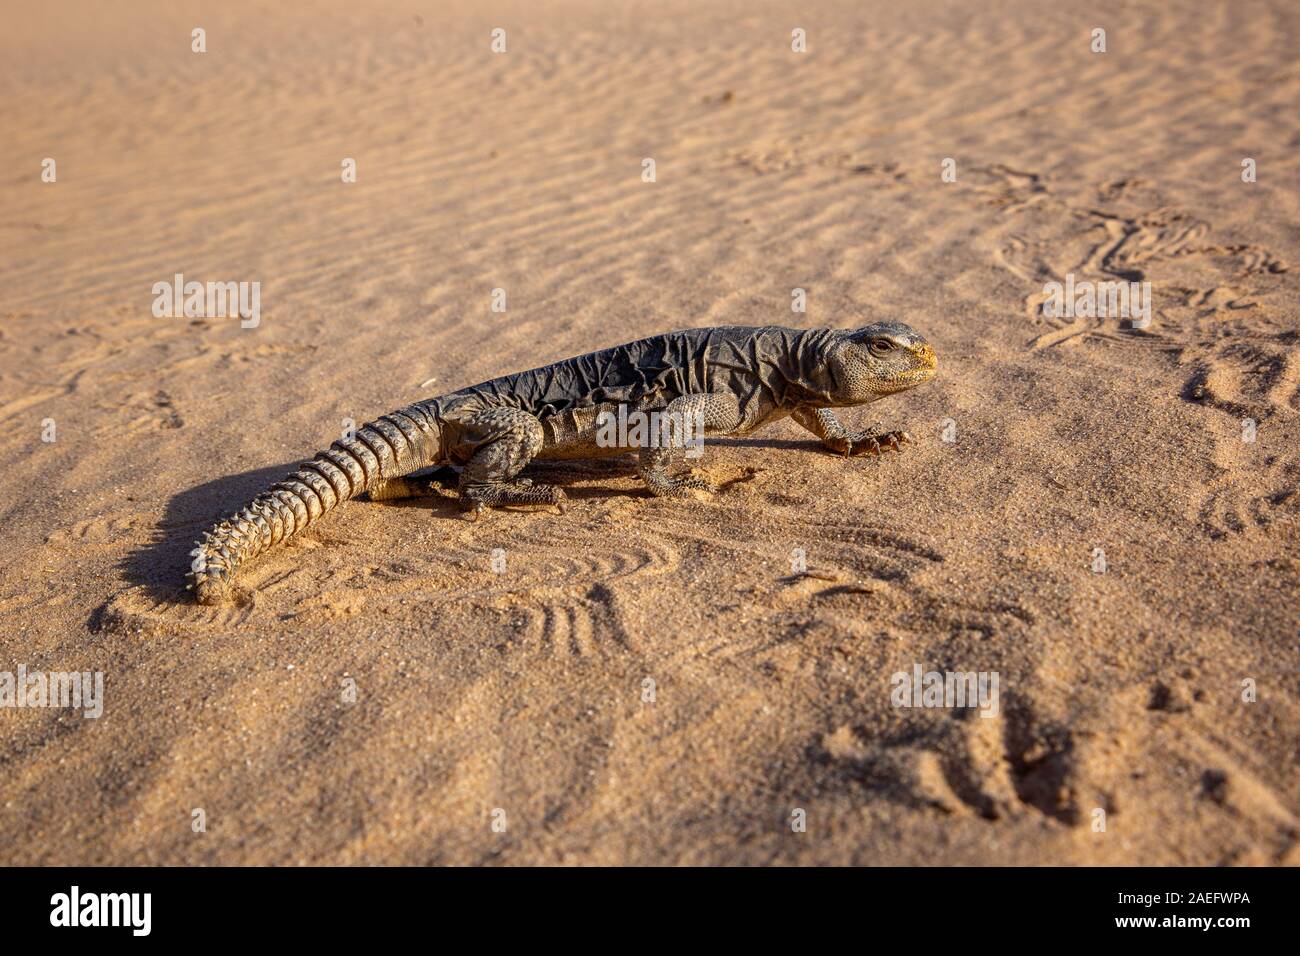 Egyptian Mastigure (Uromastyx aegyptia), AKA Leptien's Mastigure, or Egyptian dab lizard. Egyptian Mastigures can be found in Egypt, Libya and through Stock Photo